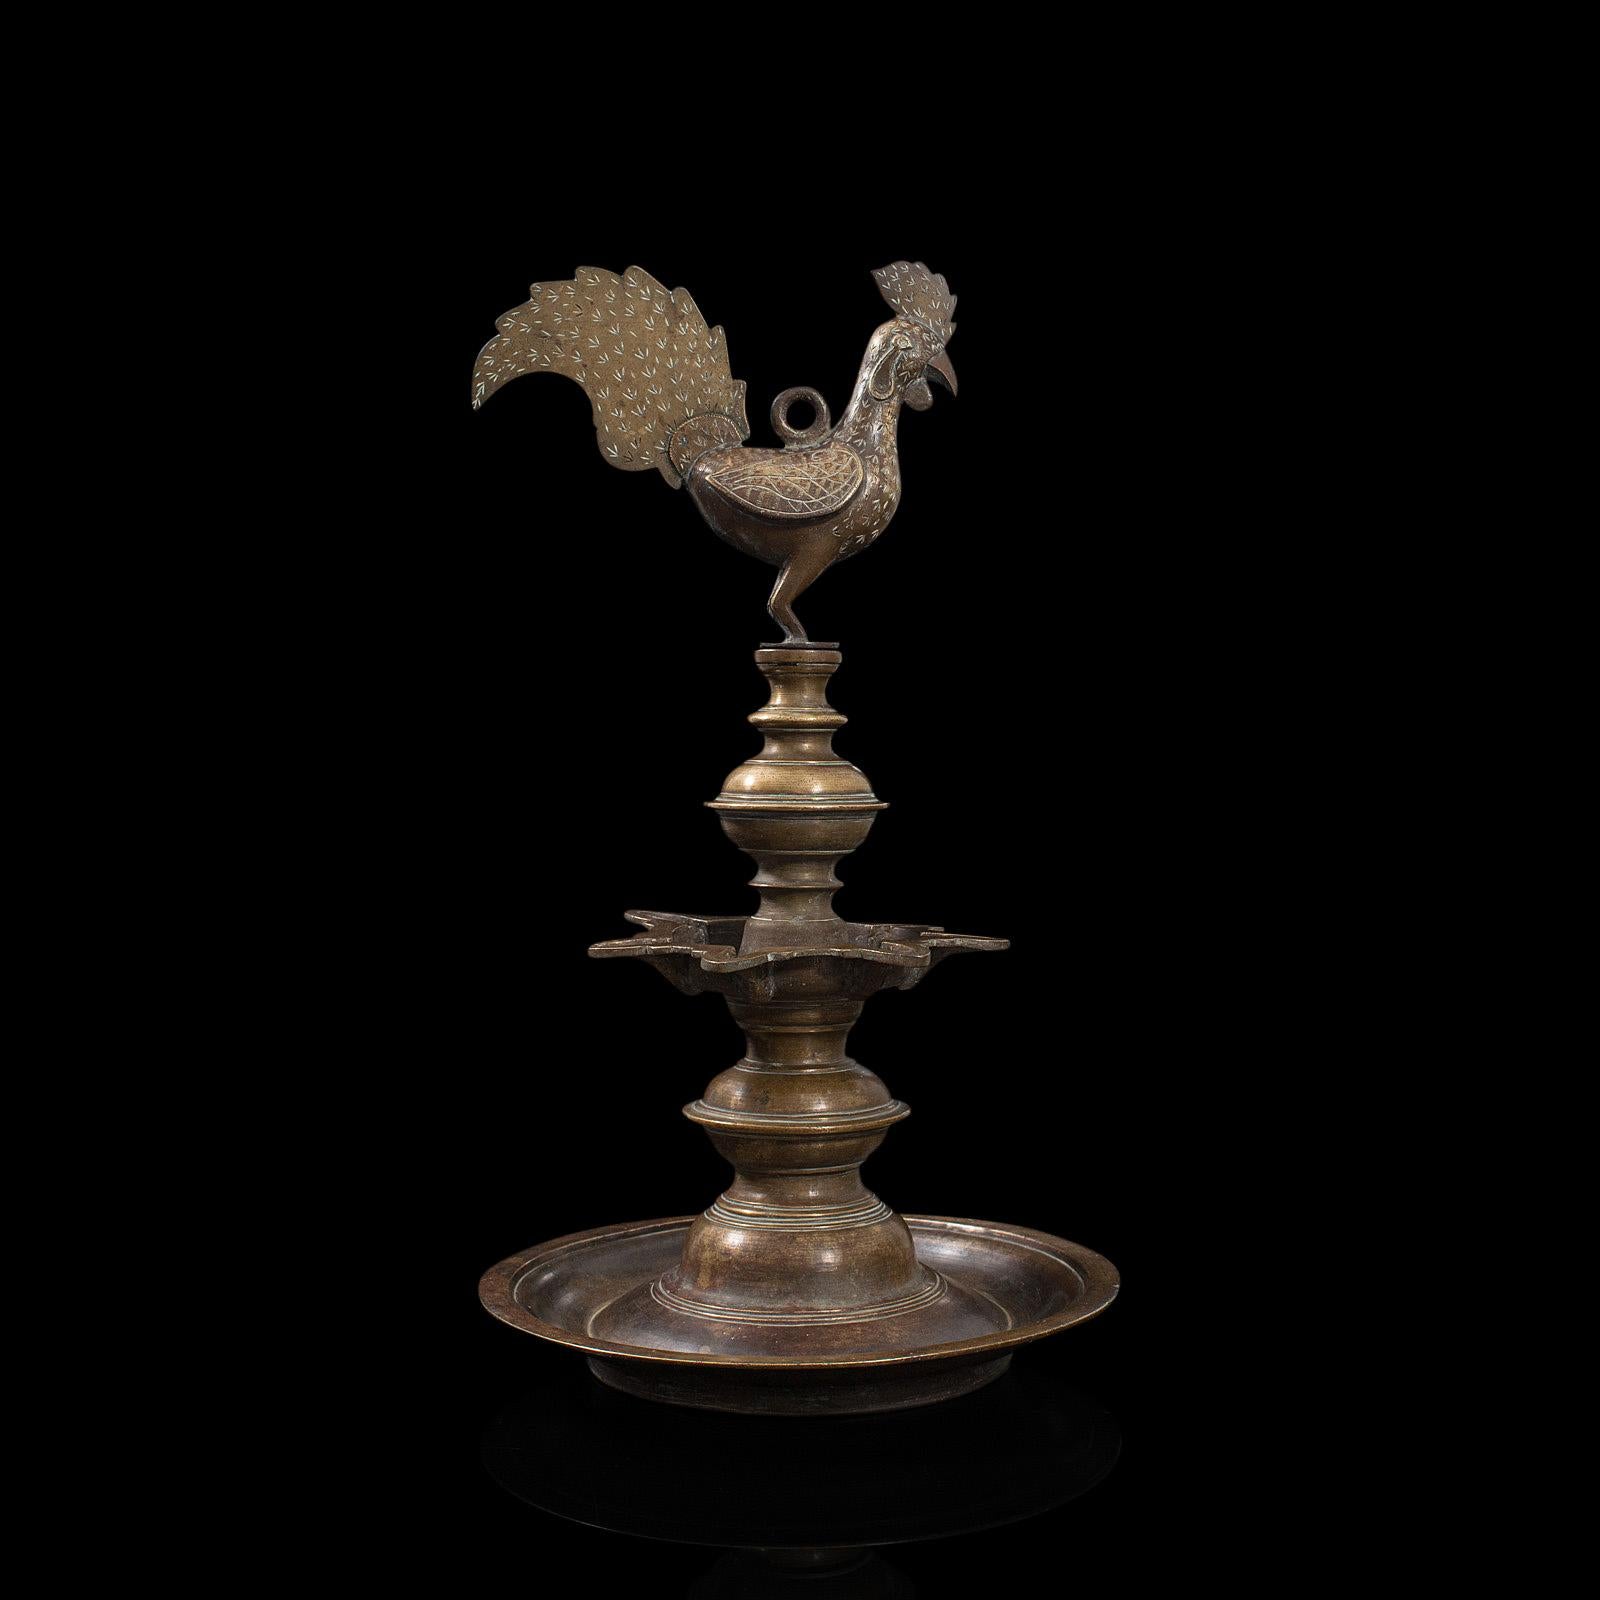 Il s'agit d'une ancienne lampe à huile Deccan. Lampe suspendue indienne en bronze avec embout d'oiseau Hamsa, datant de la fin du 19e siècle, vers 1900.

On trouve souvent des lampes suspendues dans les sanctuaires des temples
Présentant une